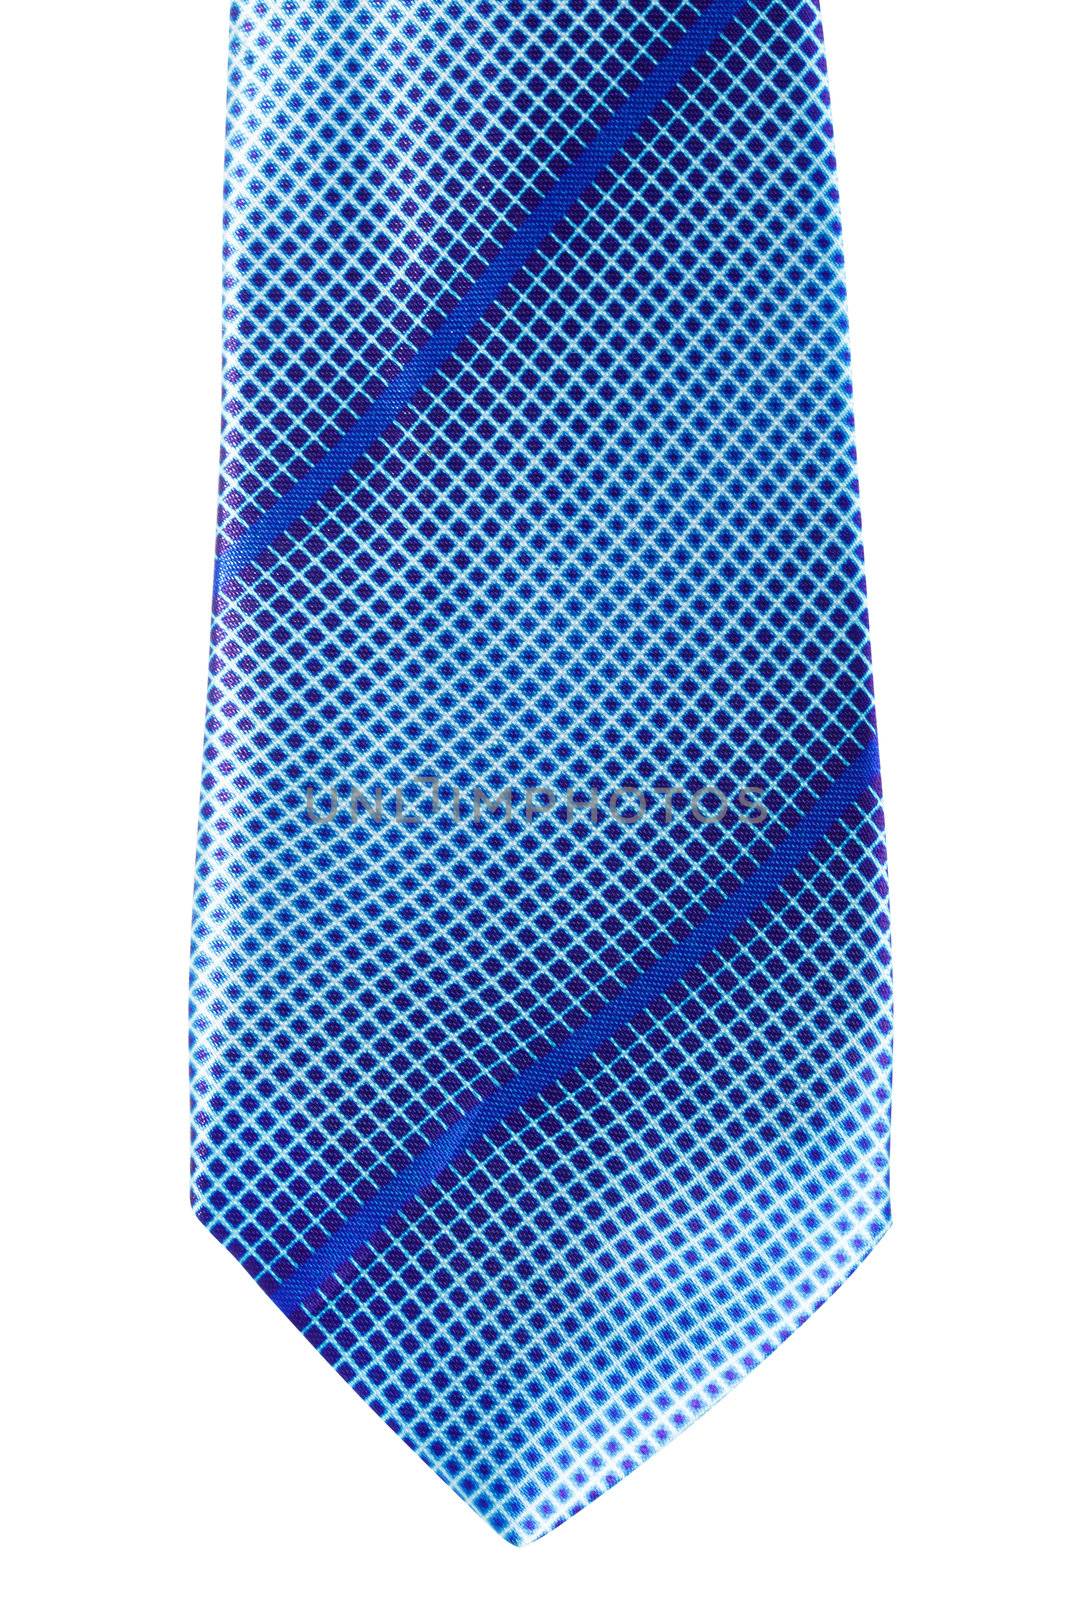 Blue Necktie by petr_malyshev